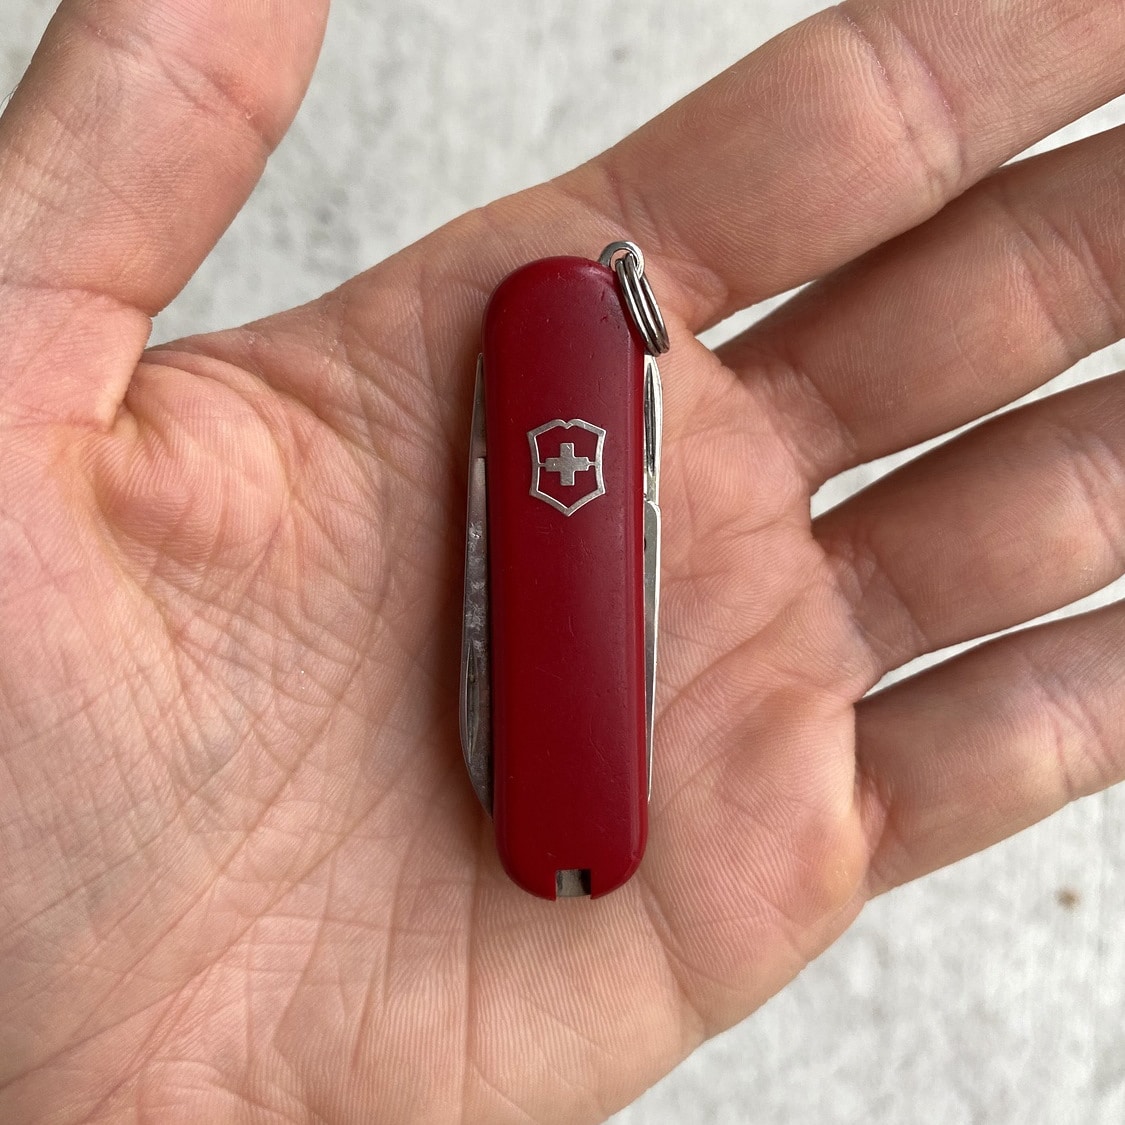 Victorinox Classic SD Small Multi Purpose Pocket Knife